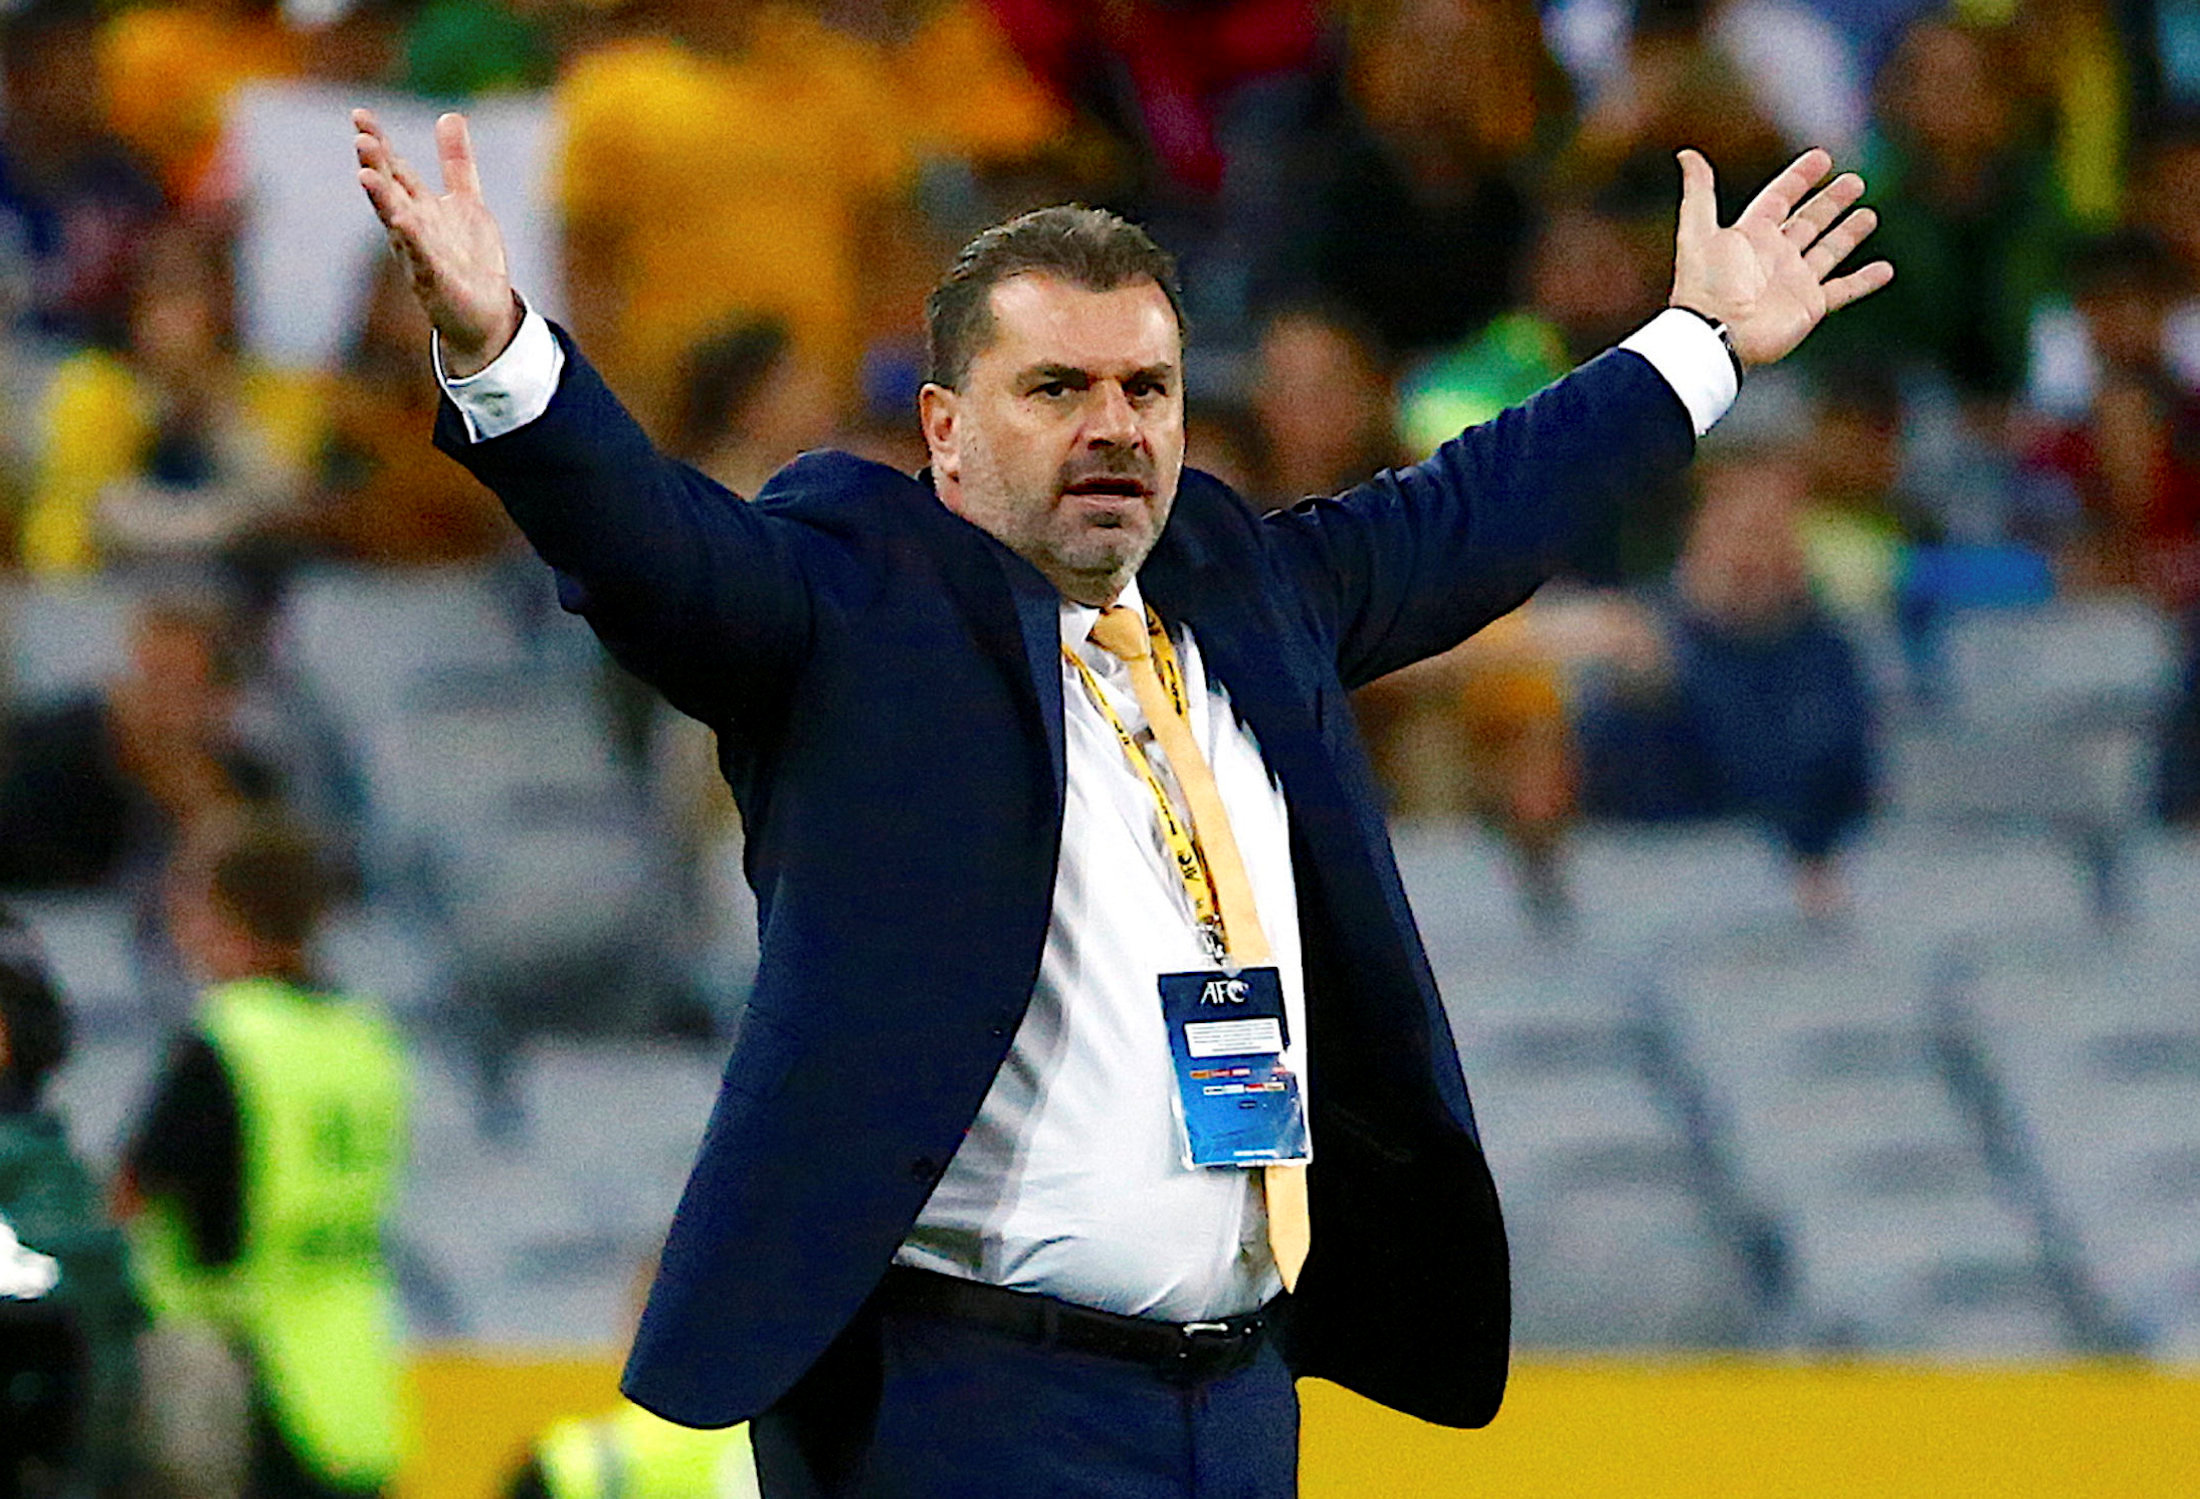 Football: Australia coach Postecoglou to step down, says report